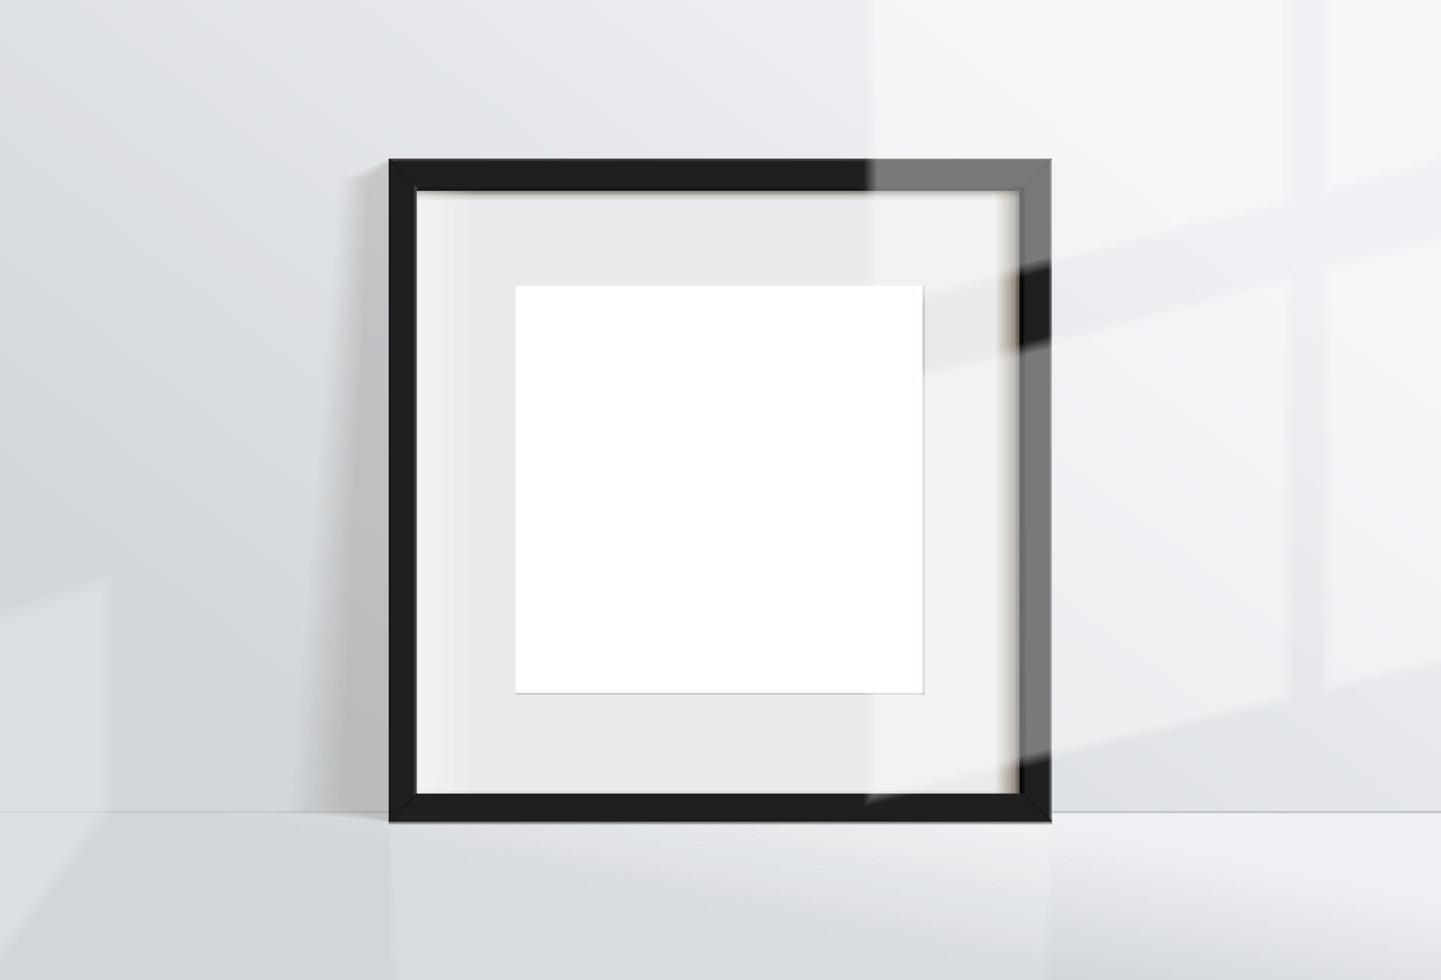 image de cadre noir carré vide minimal mock up accroché sur fond de mur blanc vecteur